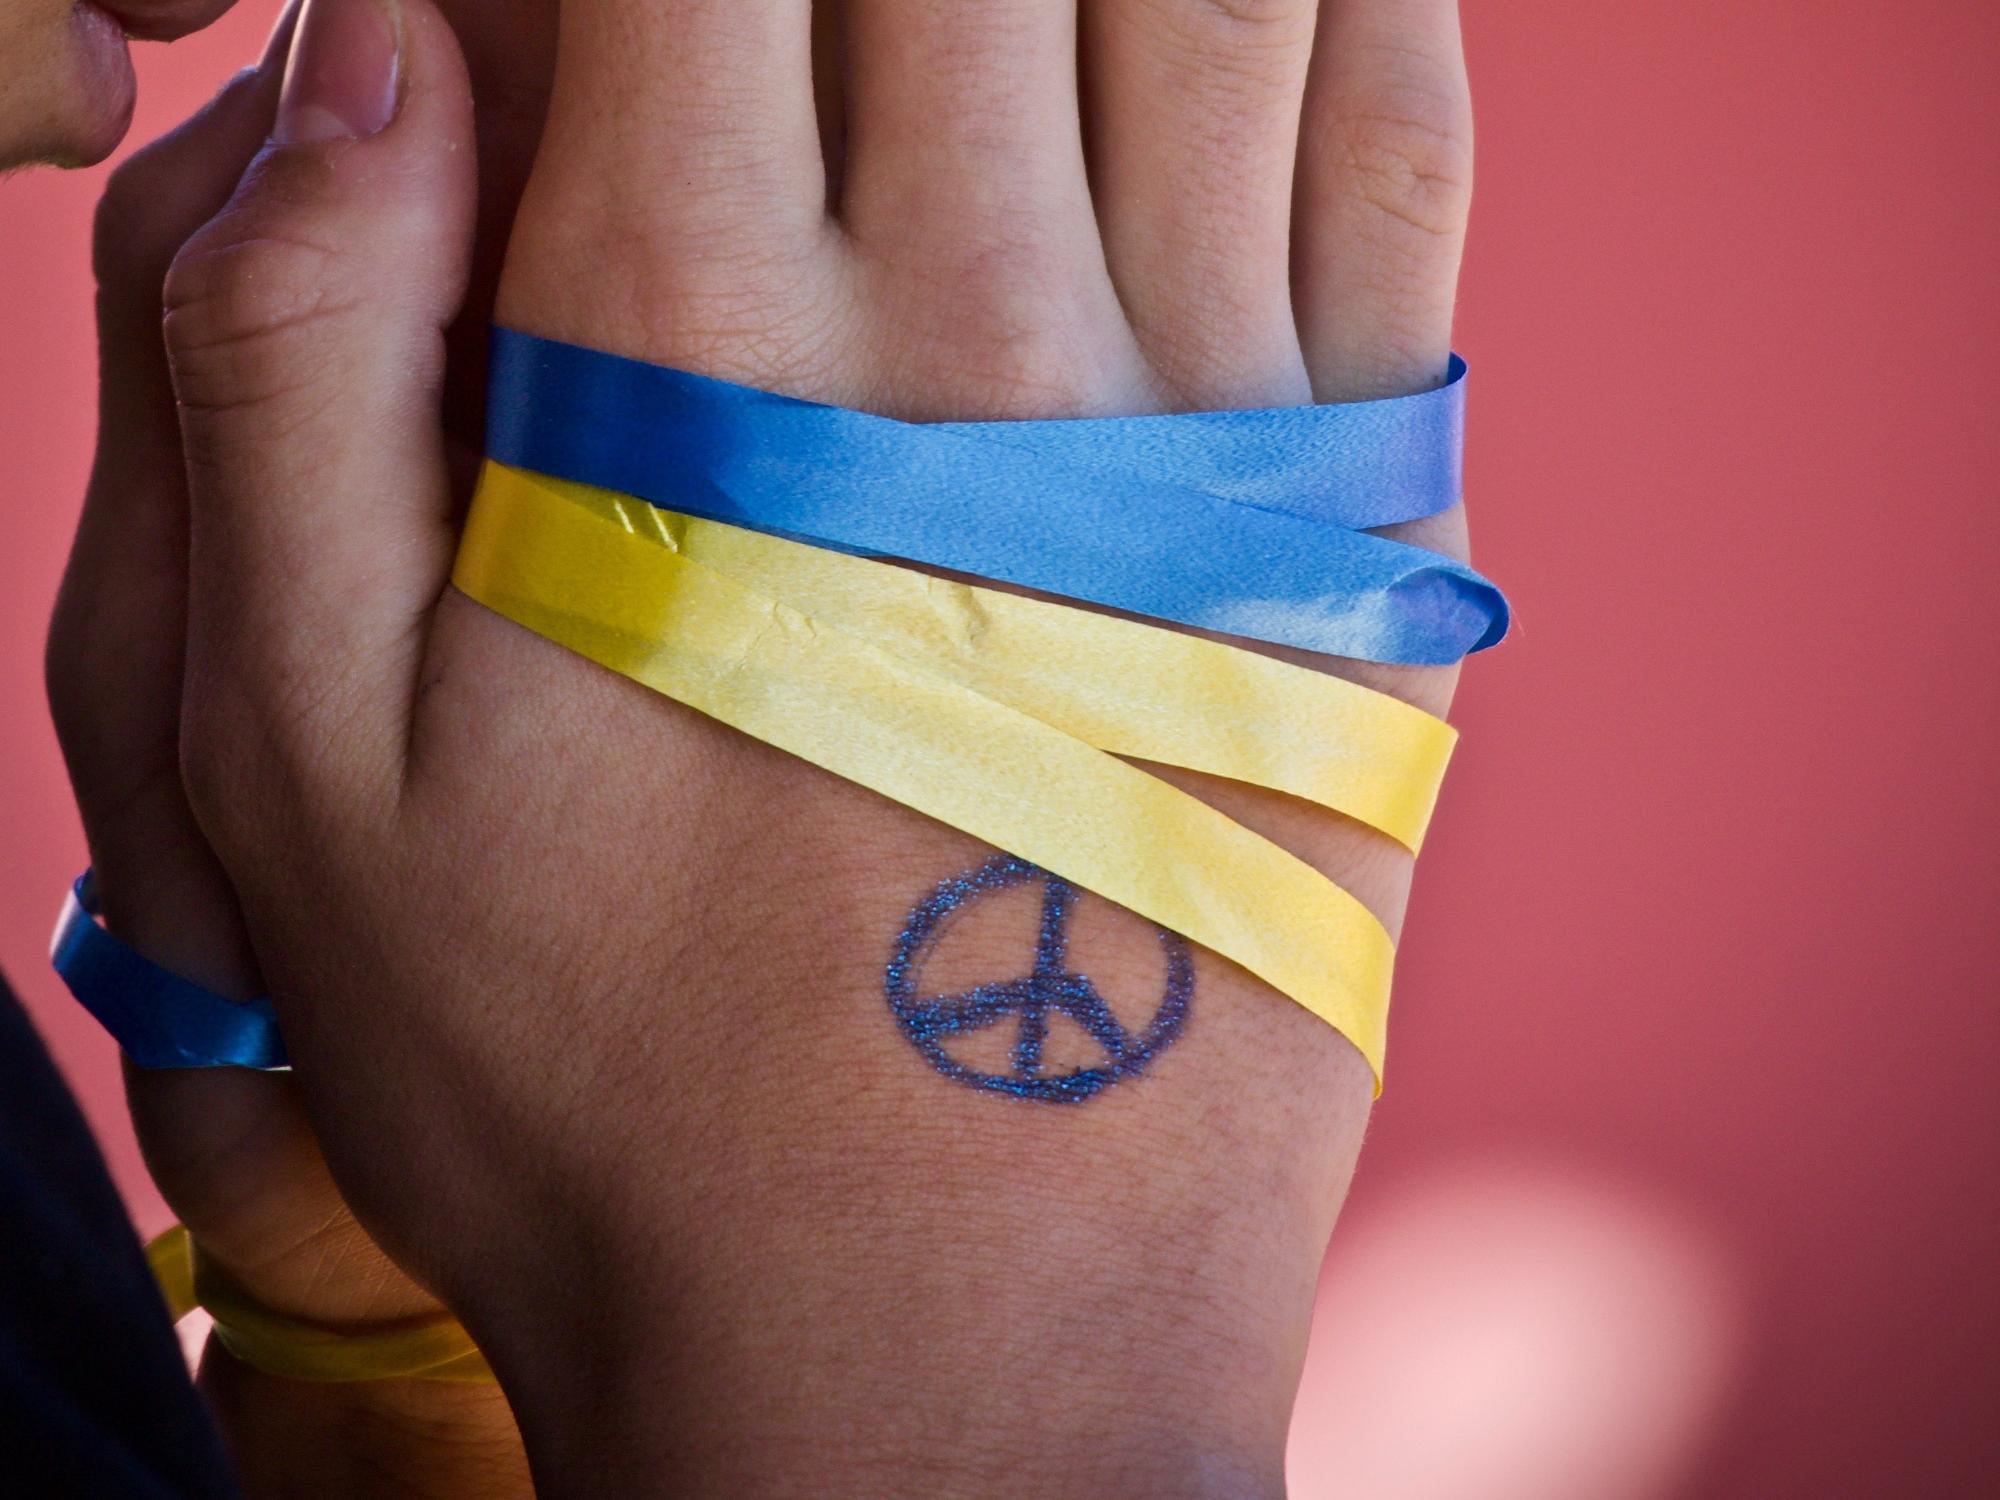 Frieden für die Ukraine